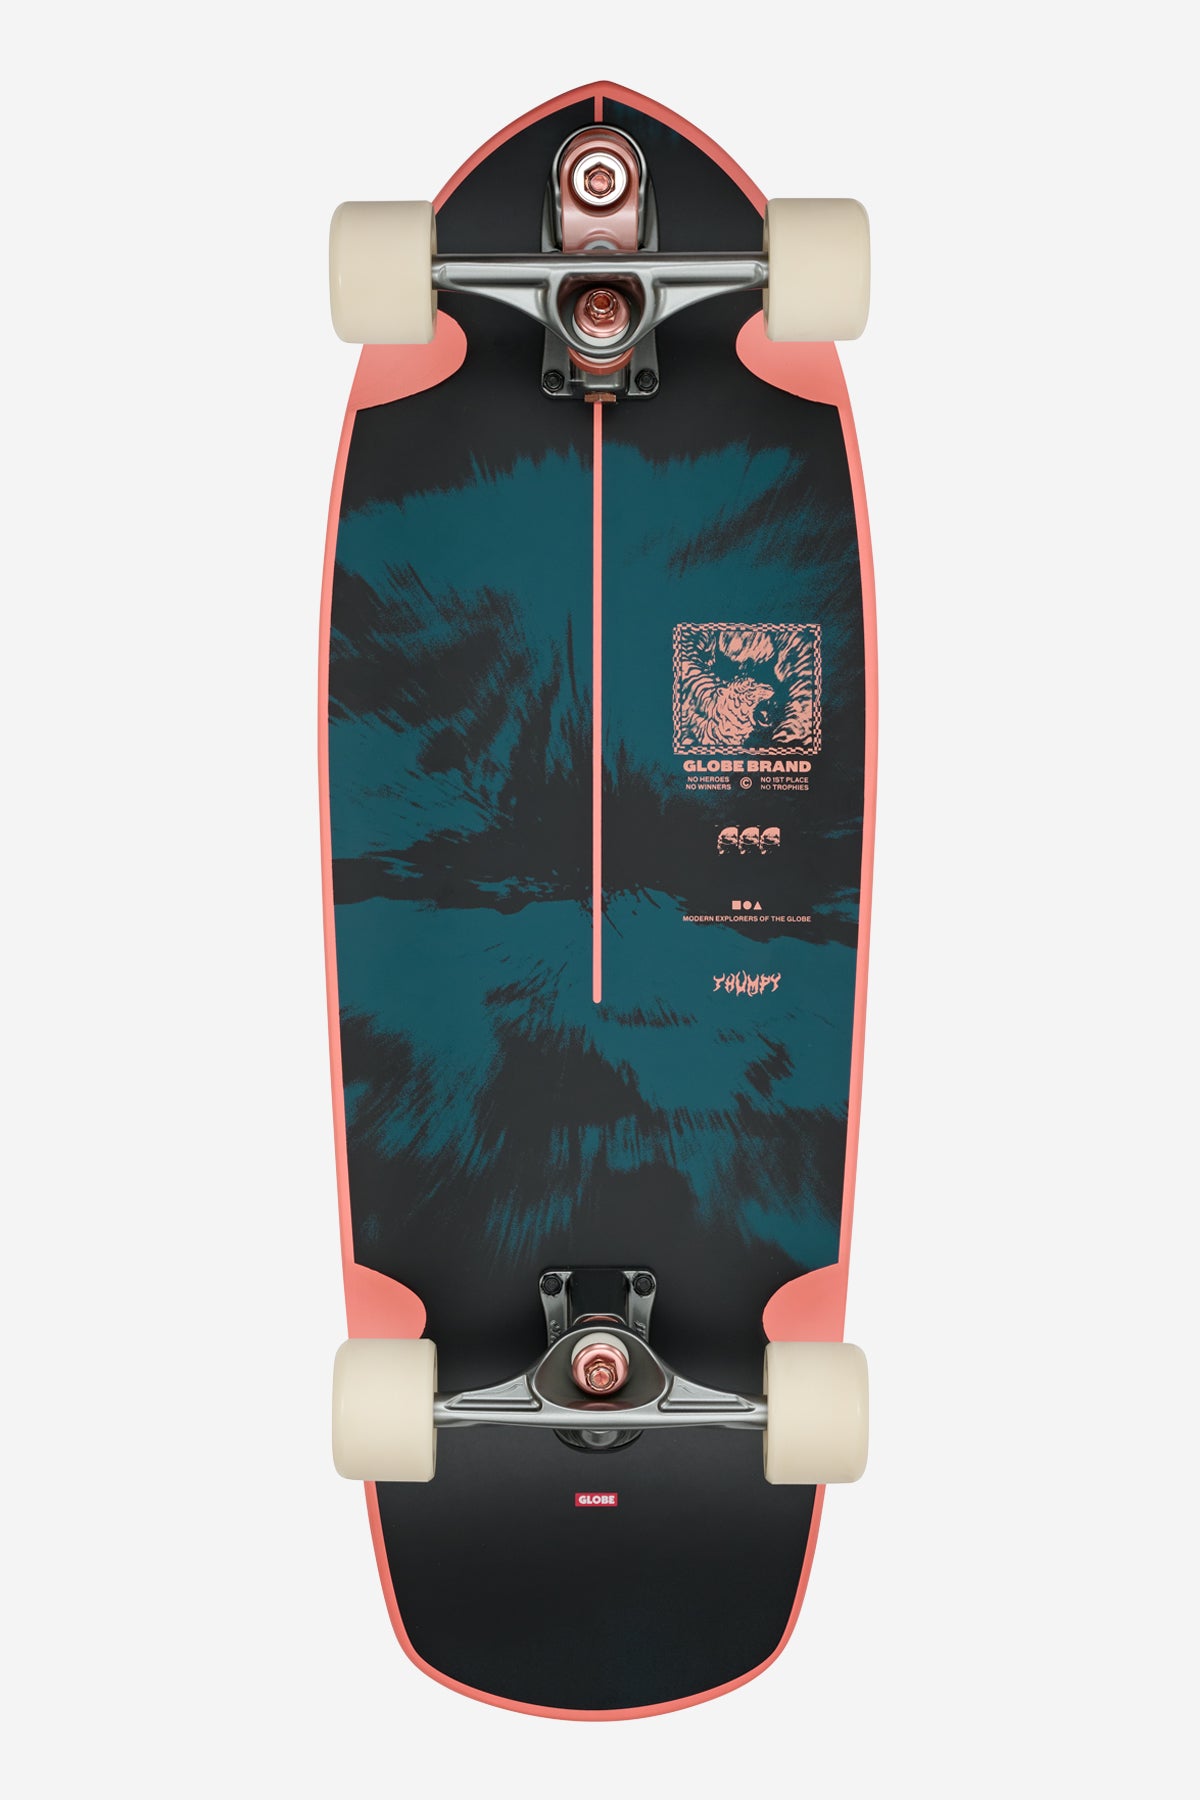 Globe - Thumpy - Stormkatten - 30" Branding skateboard